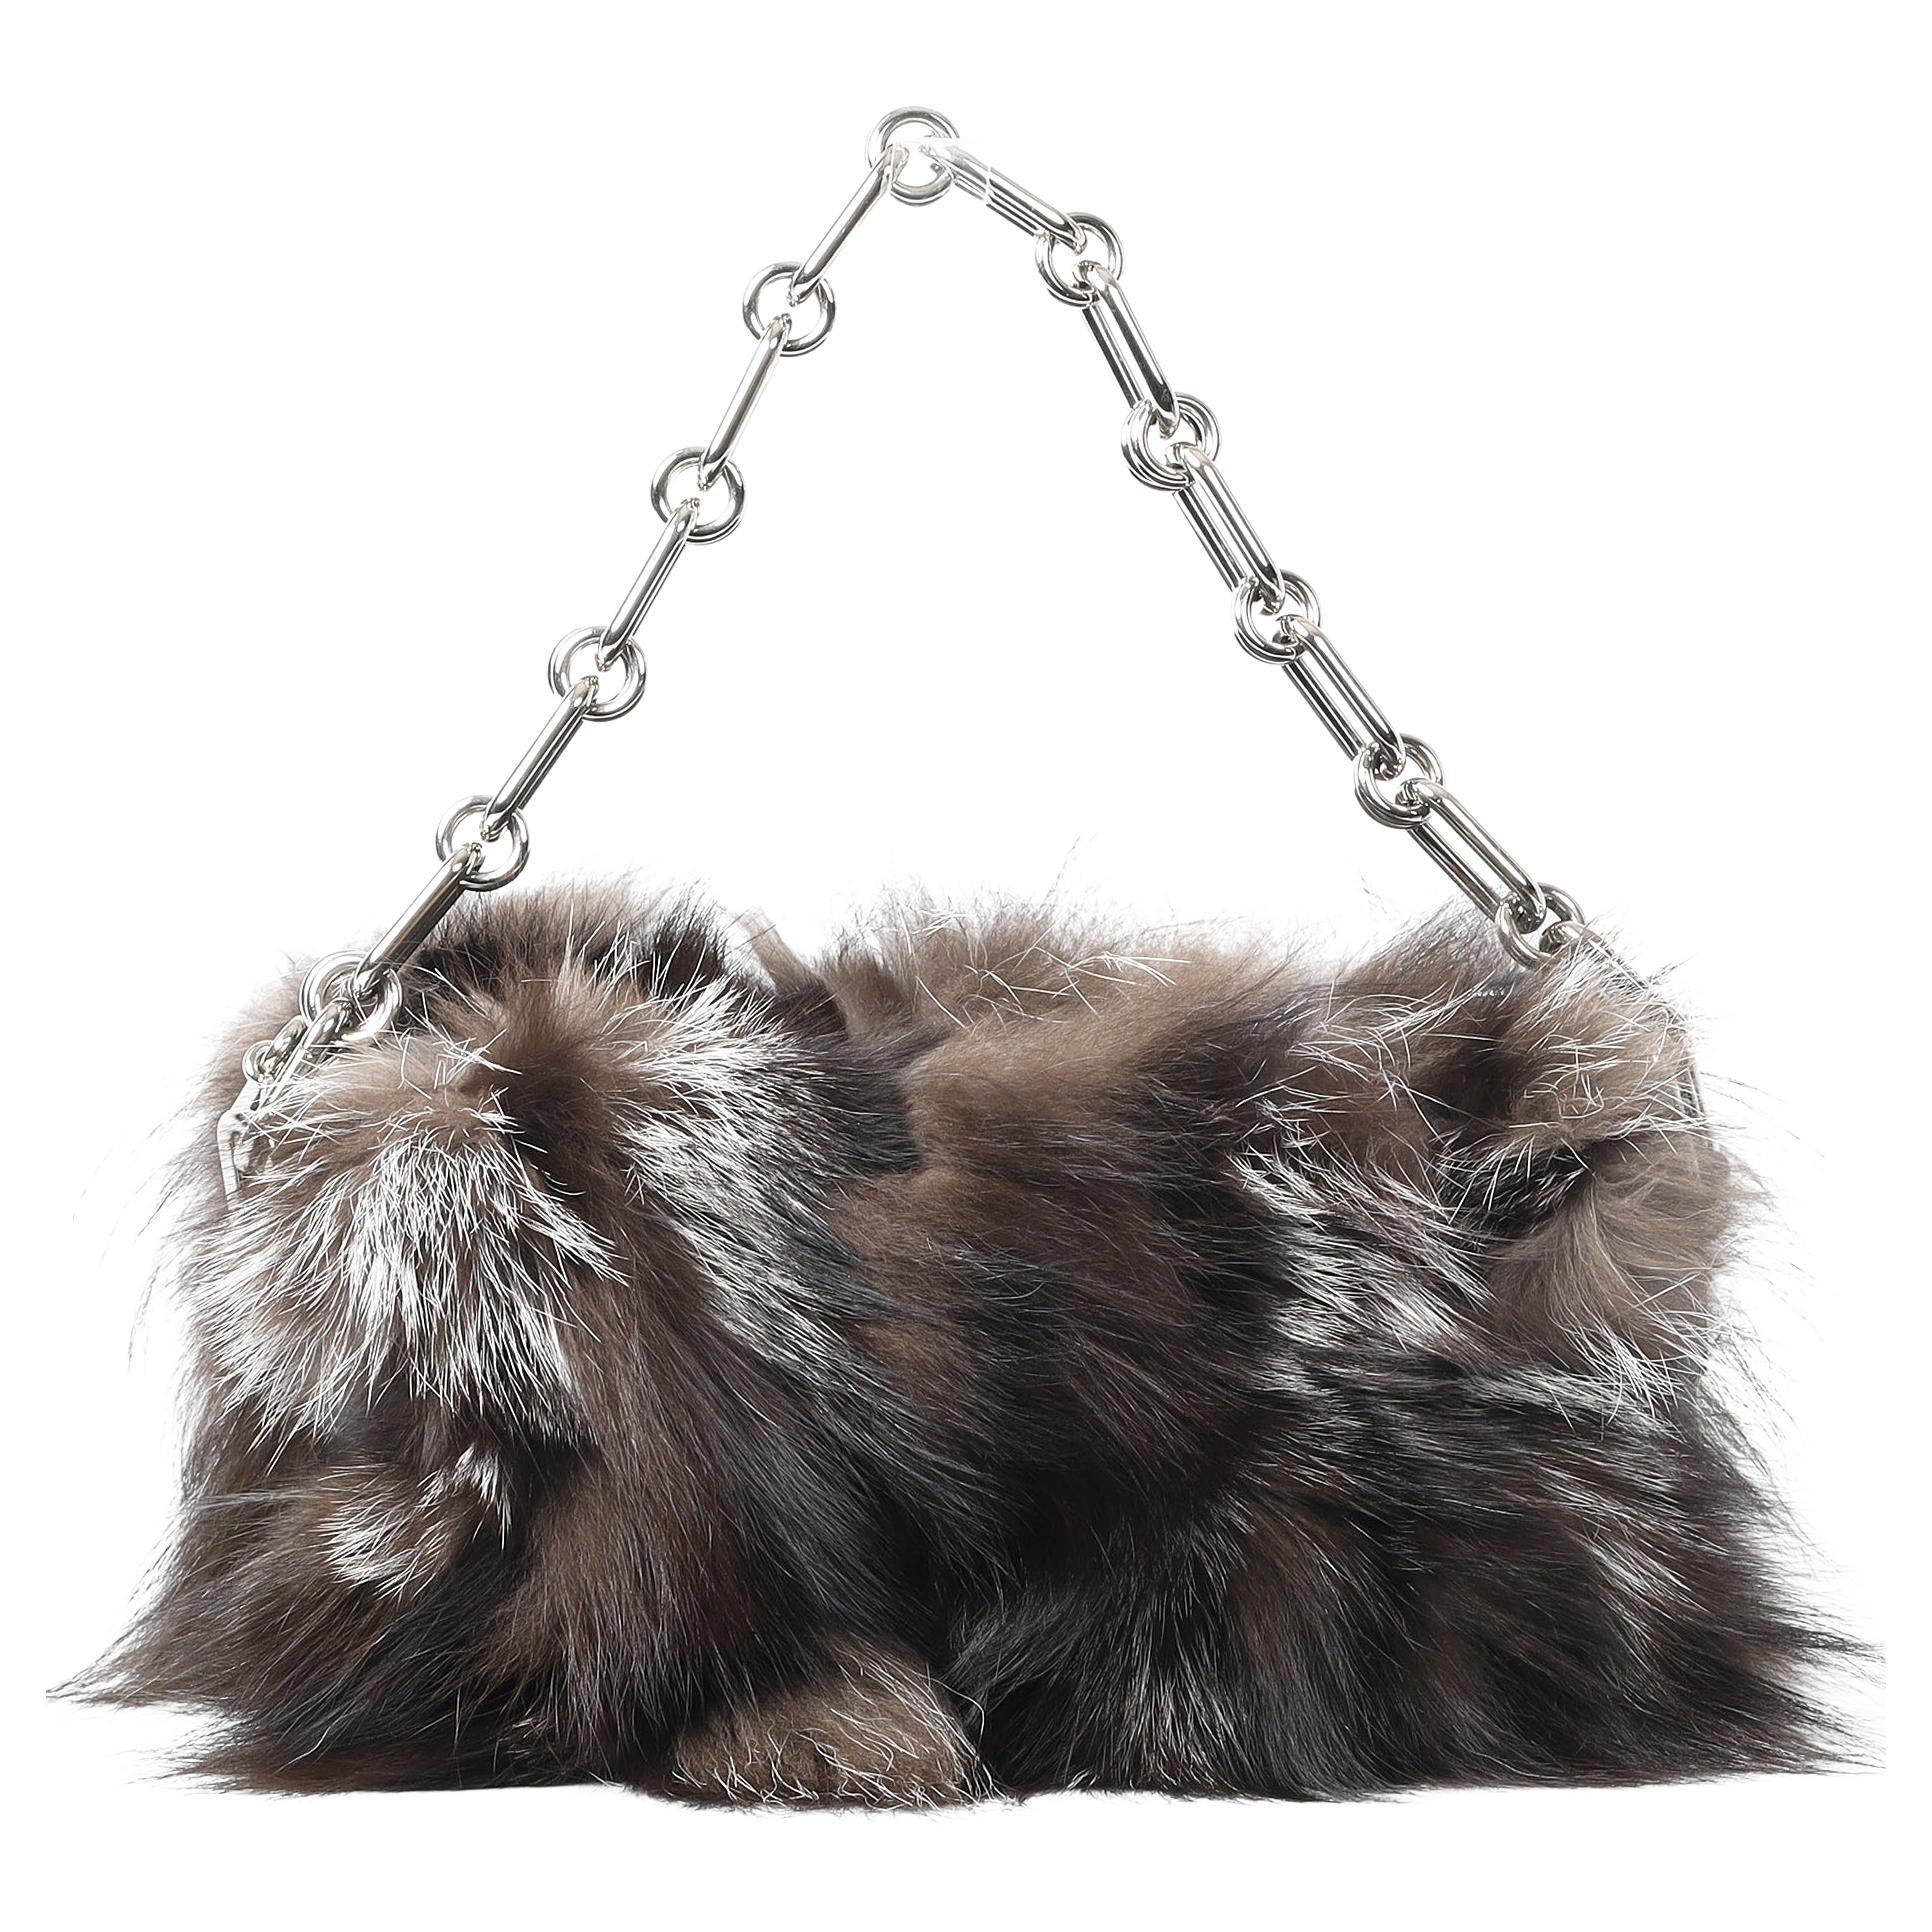 Michael Kors Collection Julie Lg Camera Fox Fur And Leather Shoulder Bag For Sale